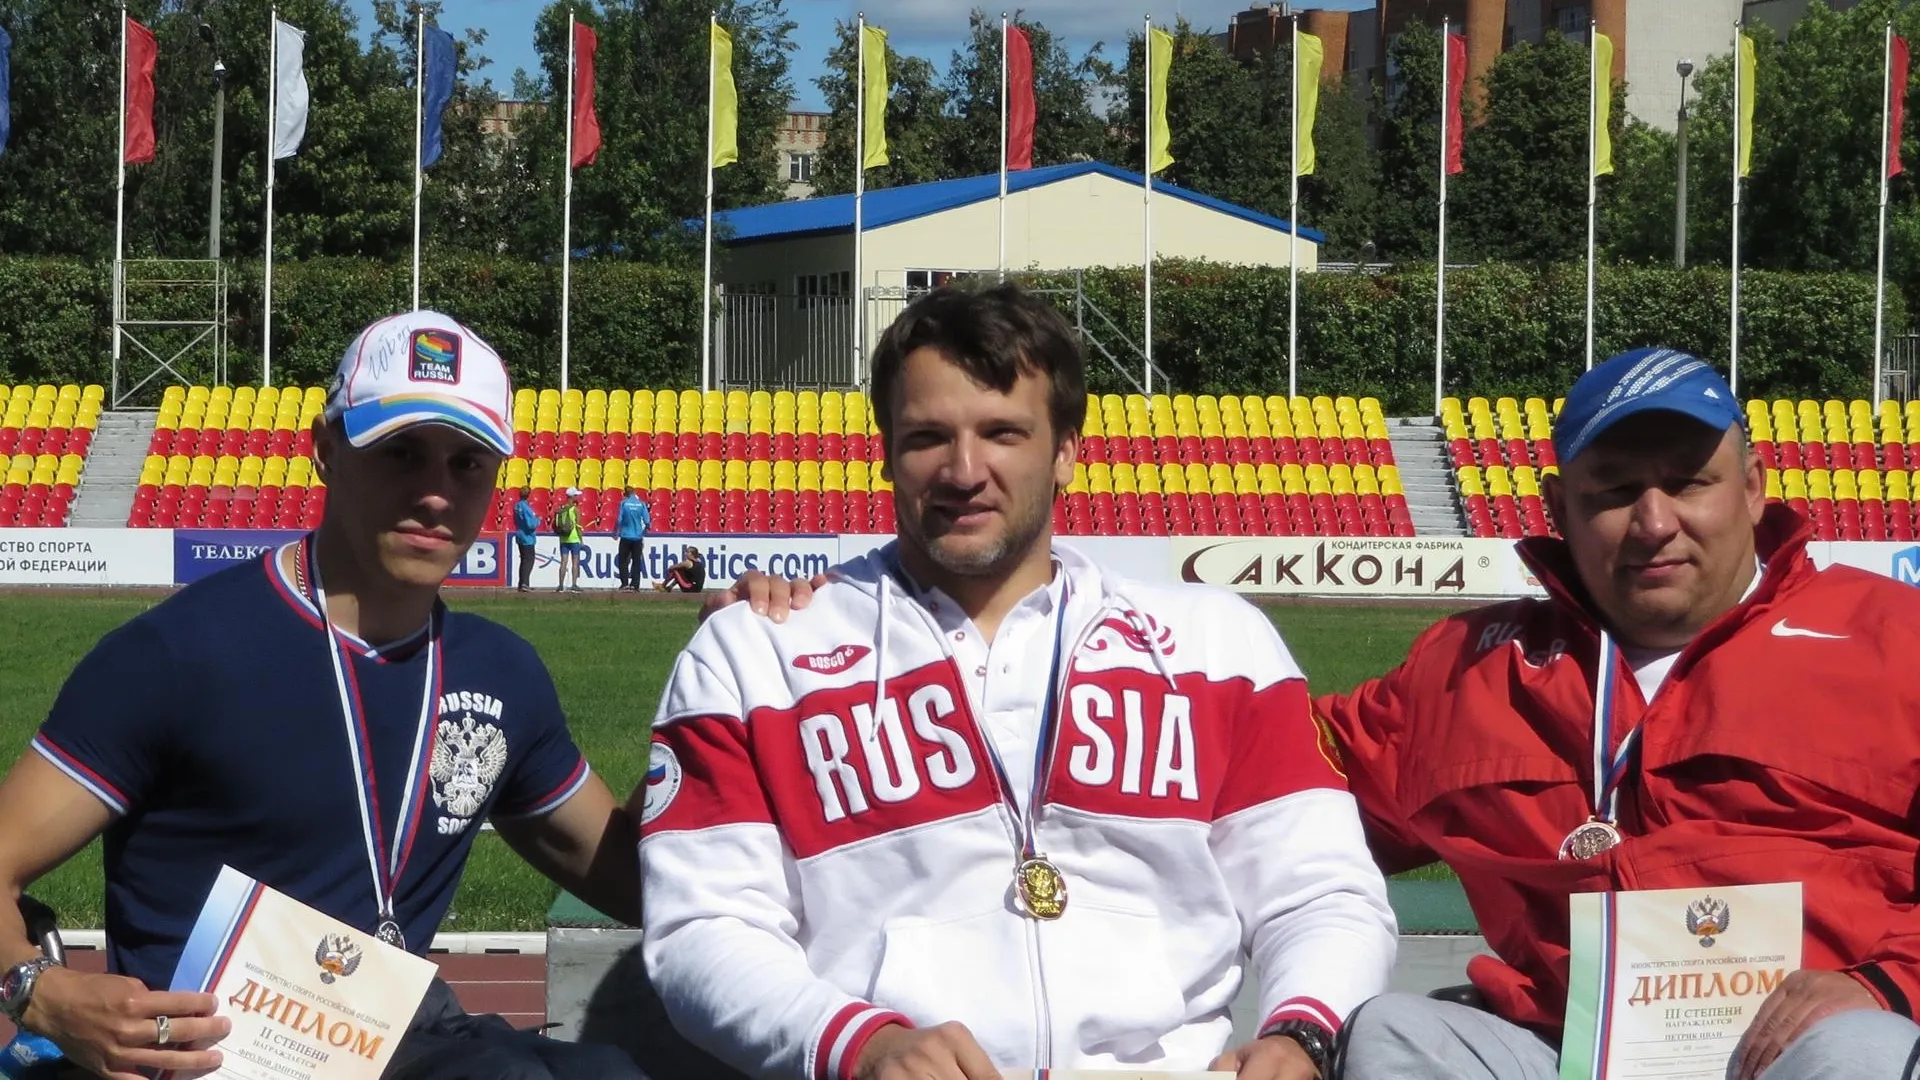 Спортсмен из Воскресенска завоевал 3 место на этапе мирового Гран‑при по легкой атлетике